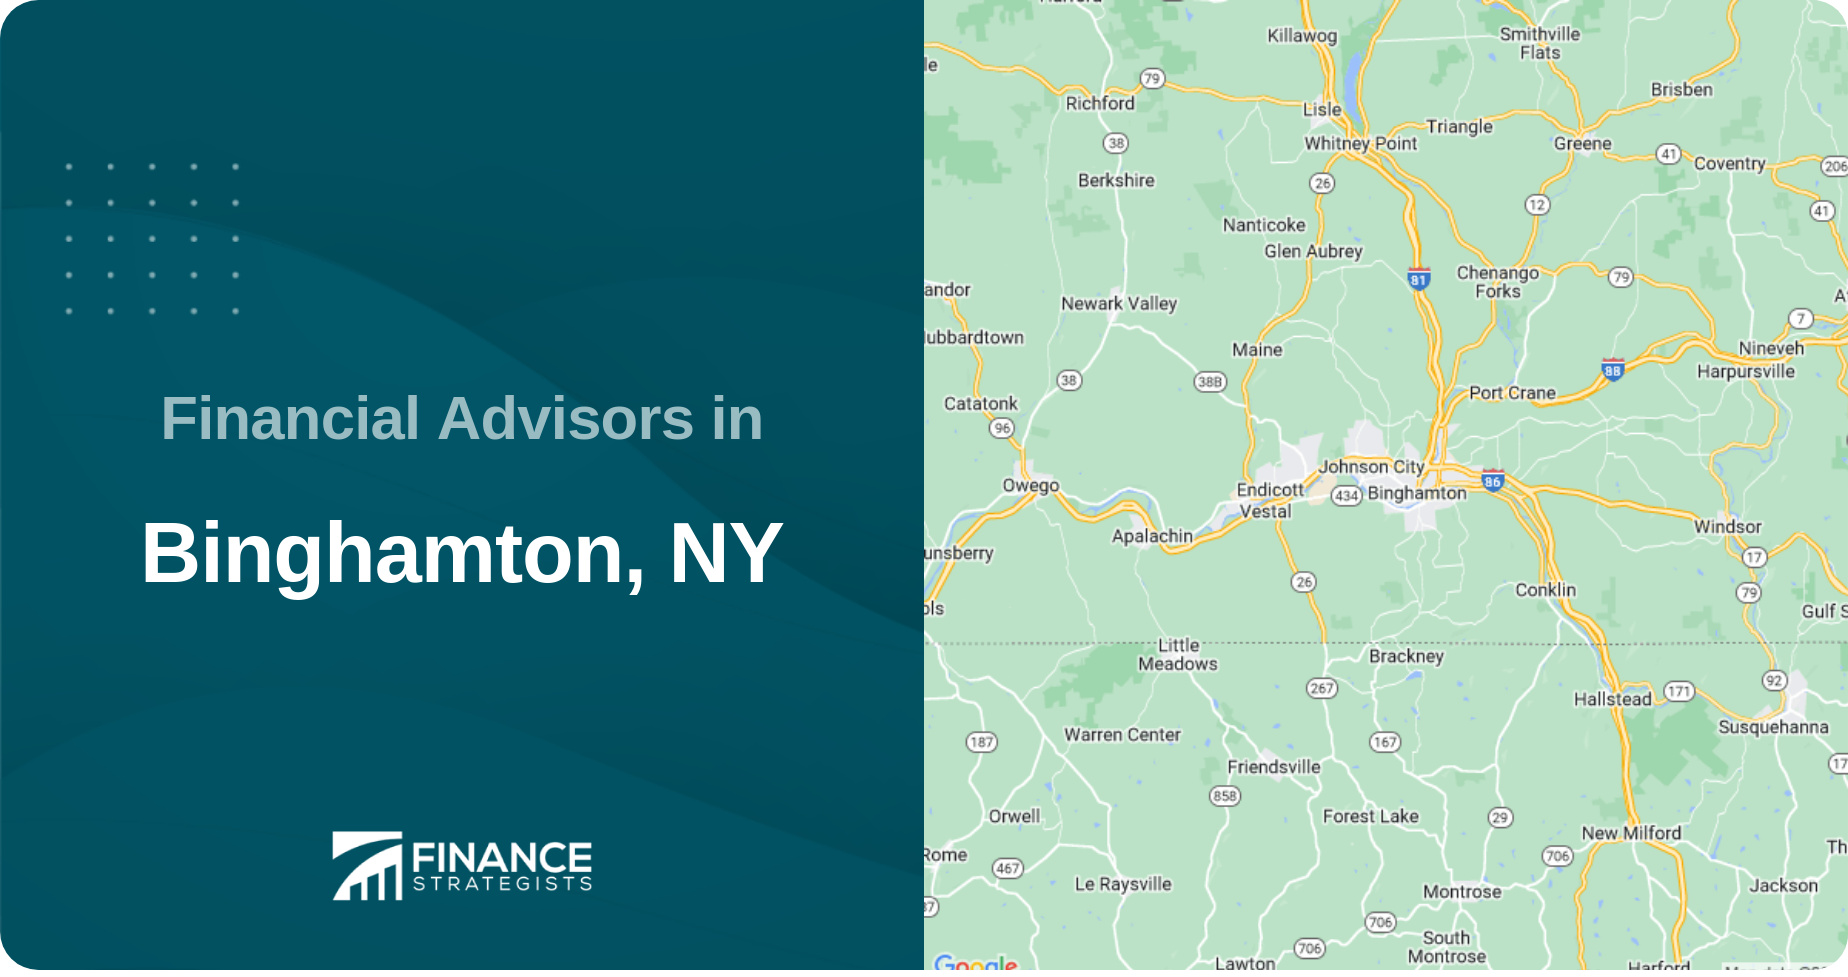 Financial Advisors in Binghamton, NY